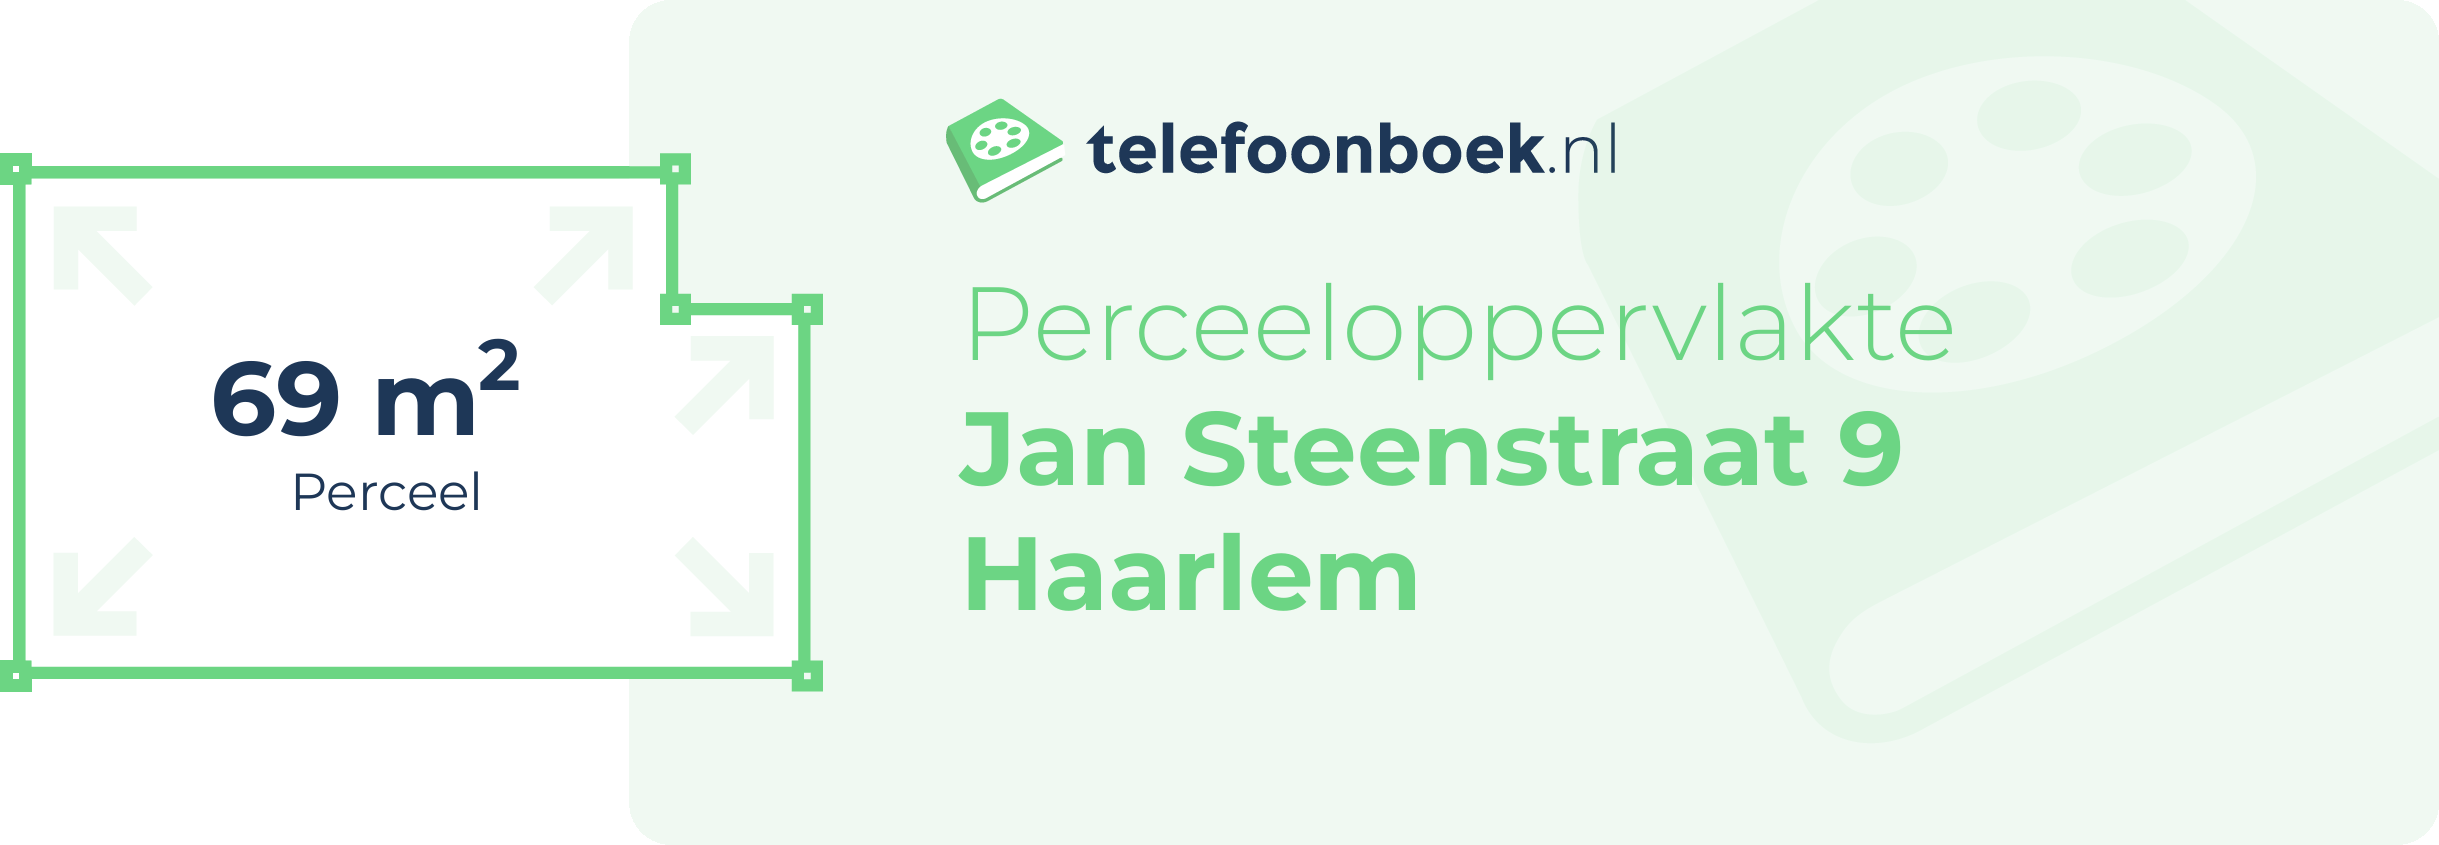 Perceeloppervlakte Jan Steenstraat 9 Haarlem